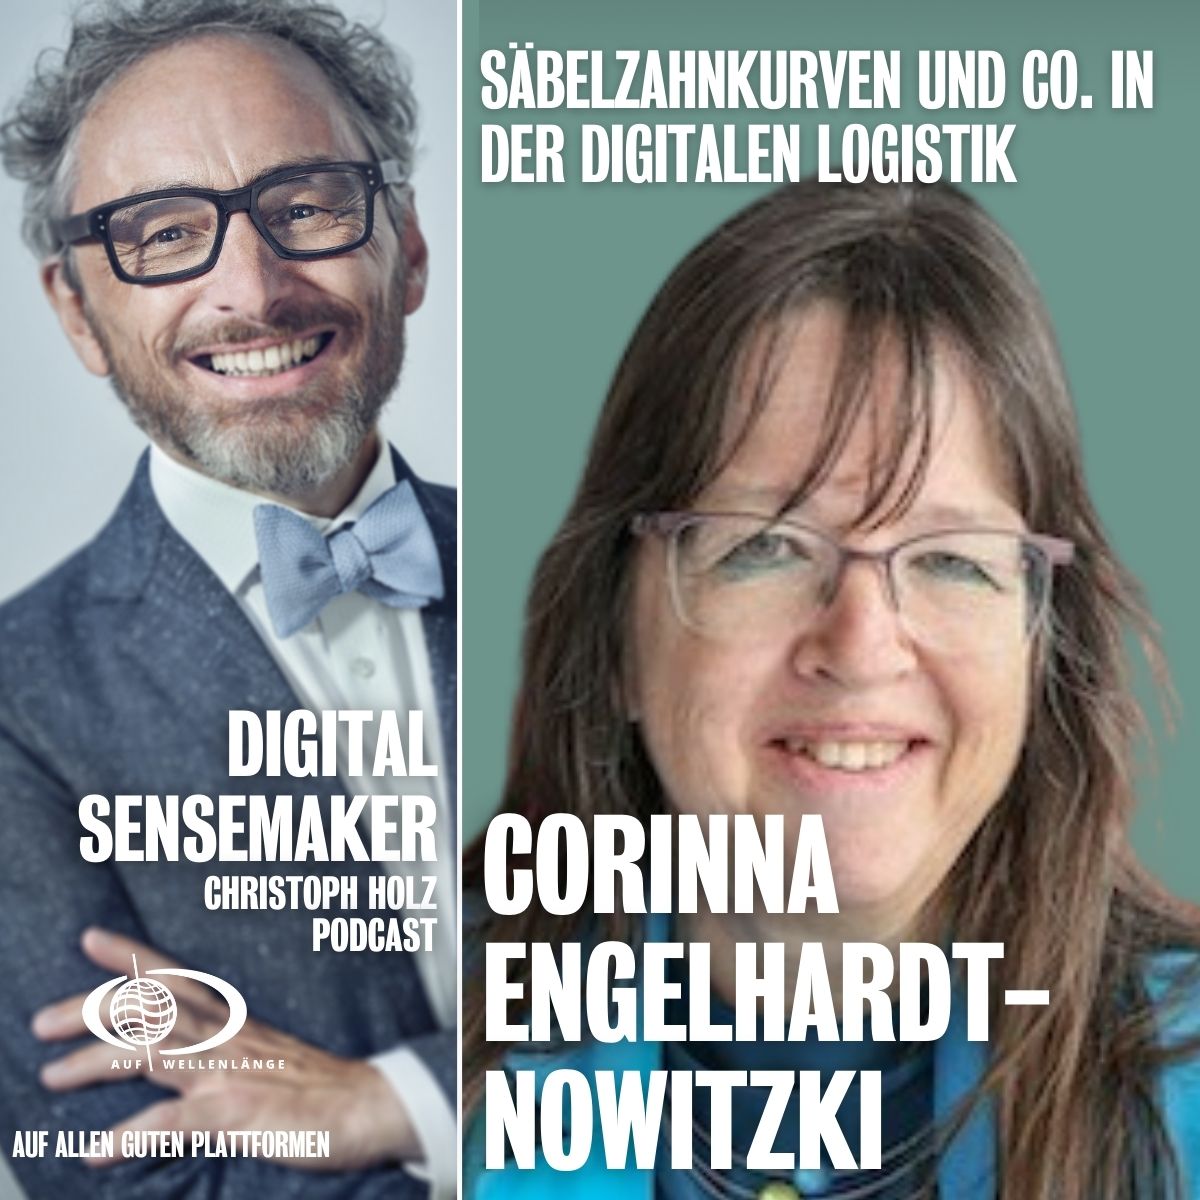 # 129 “Säbelzahnkurven und Co. in der digitalen Logistik” mit Corinna Engelhardt-Nowitzki, Geschäftsführerin FH Joanneum